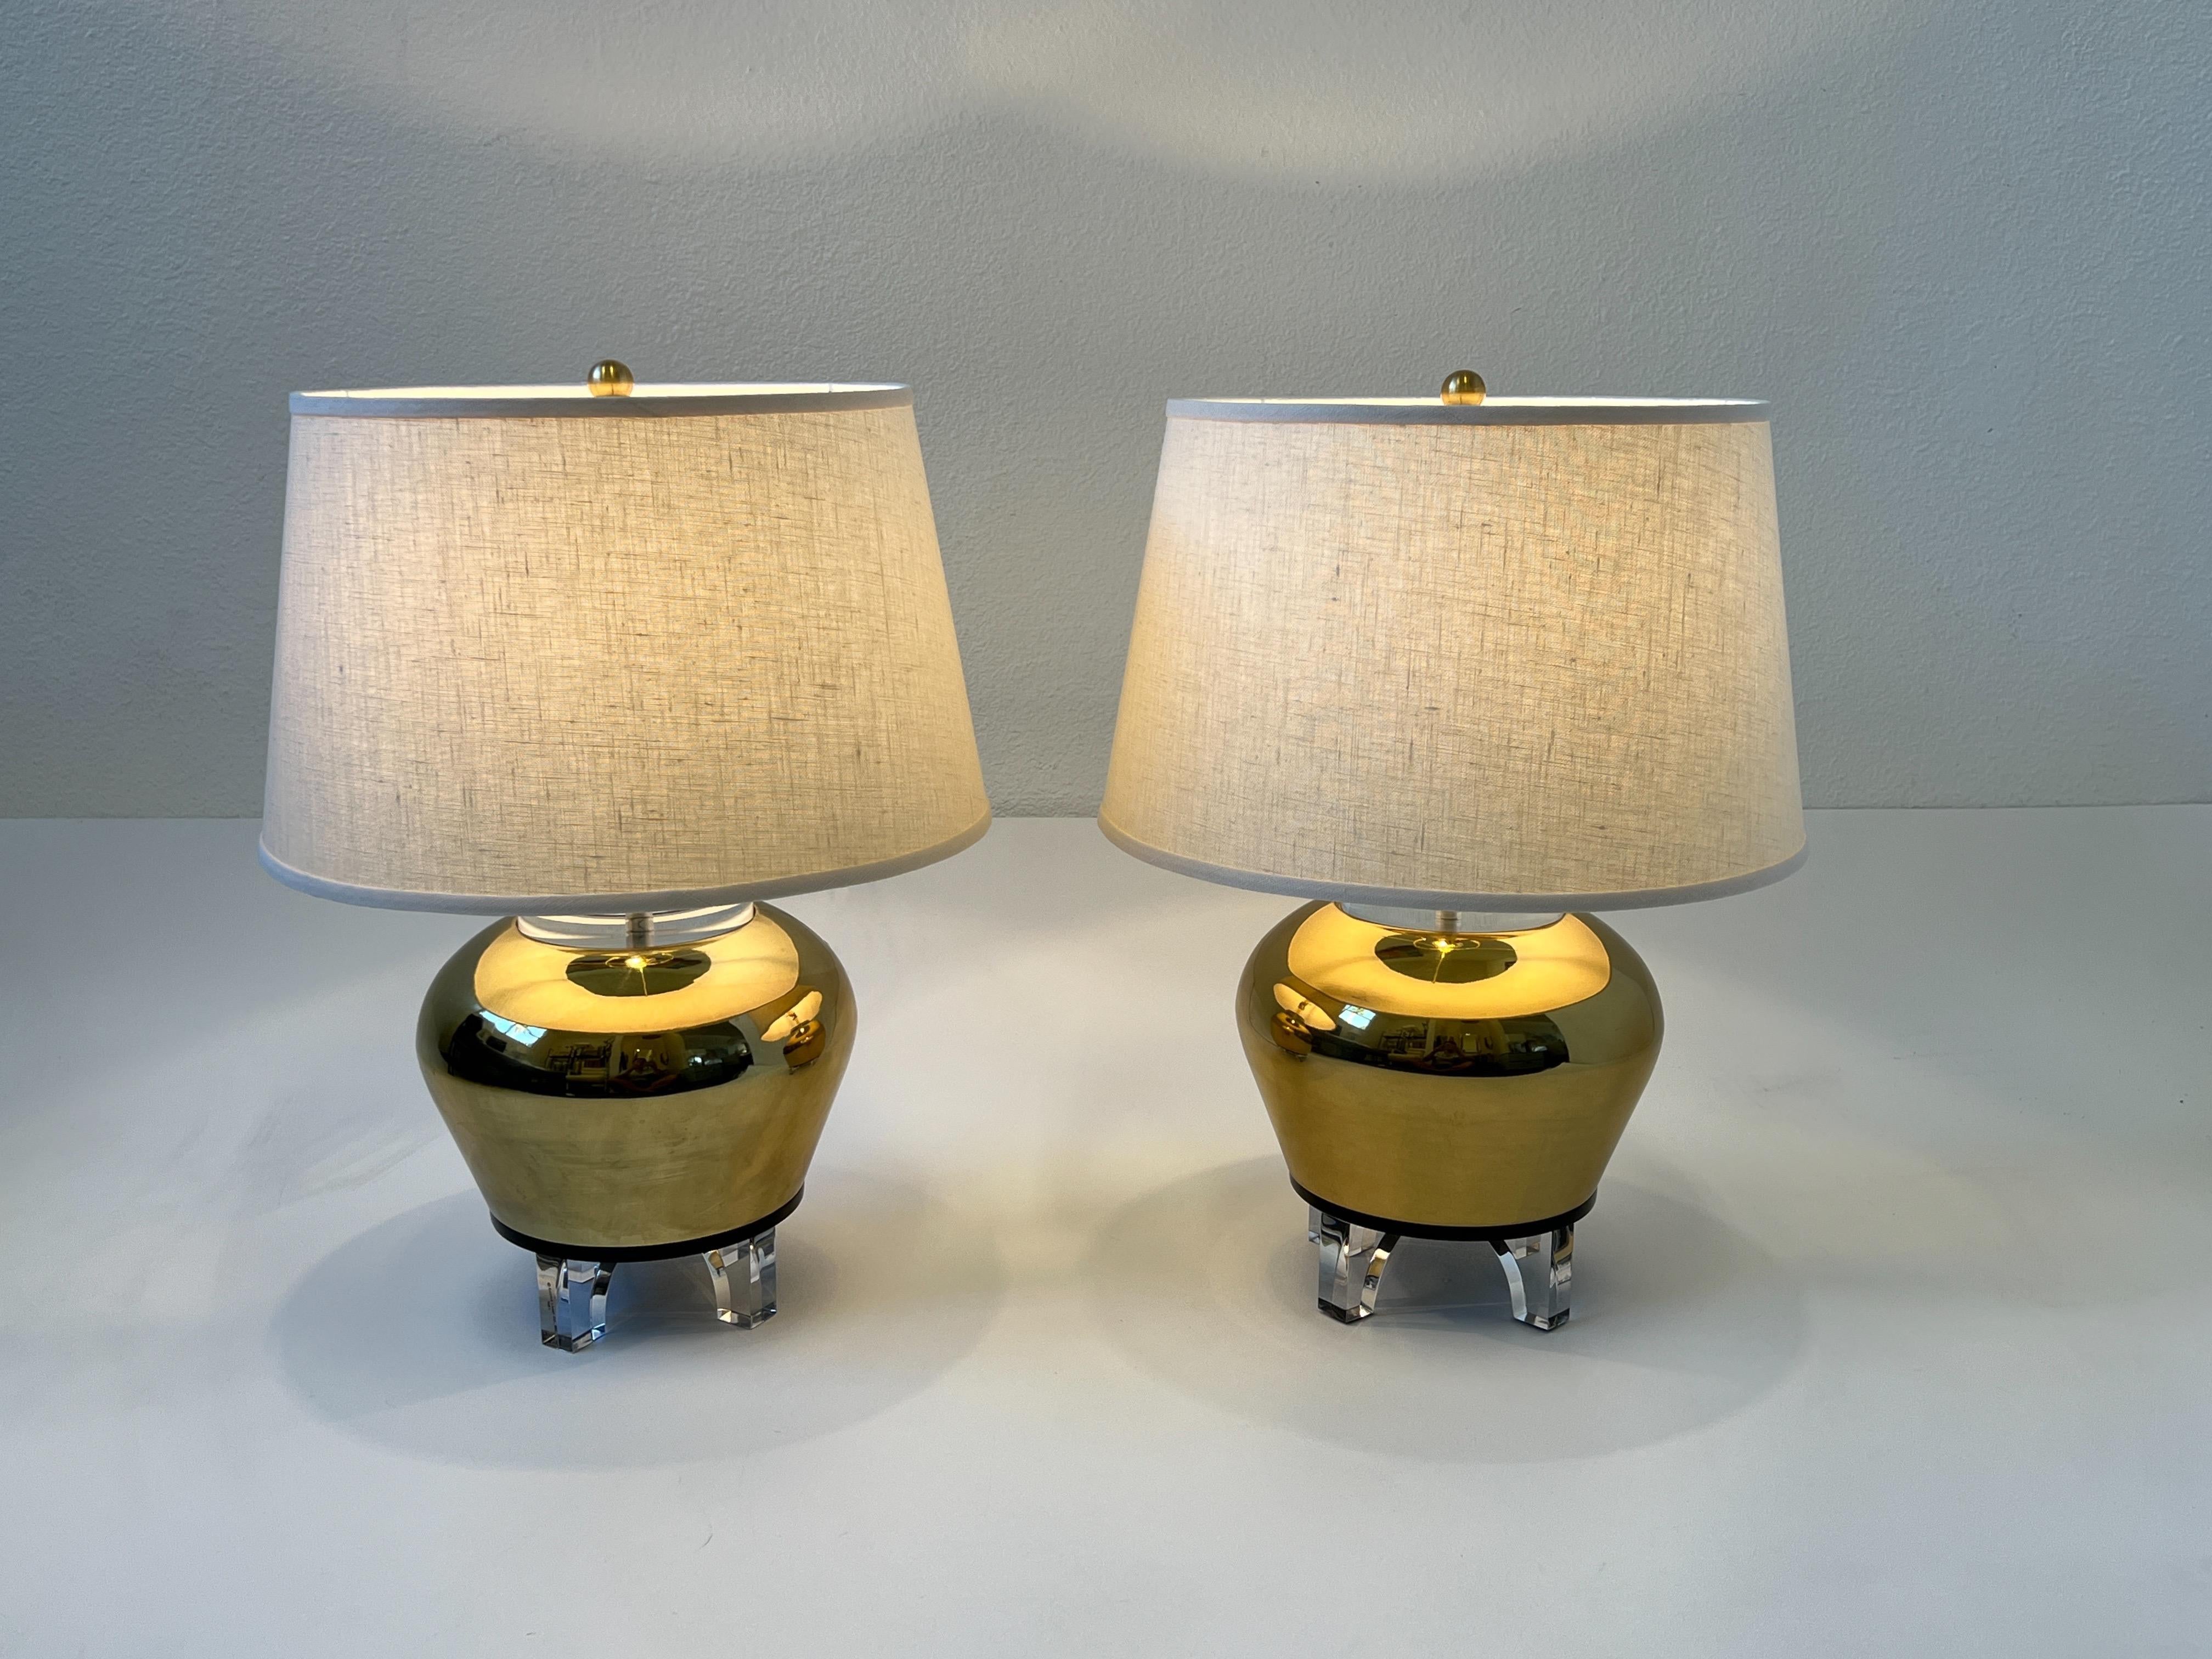 1983 Lampes de table en forme d'urne en lucite claire, noire et laiton poli par Bauer Lamp Company. 
Nouvellement reconnecté avec de nouvelles ferrures en laiton et de nouveaux abat-jour en lin vanille. 

Mesures : 16